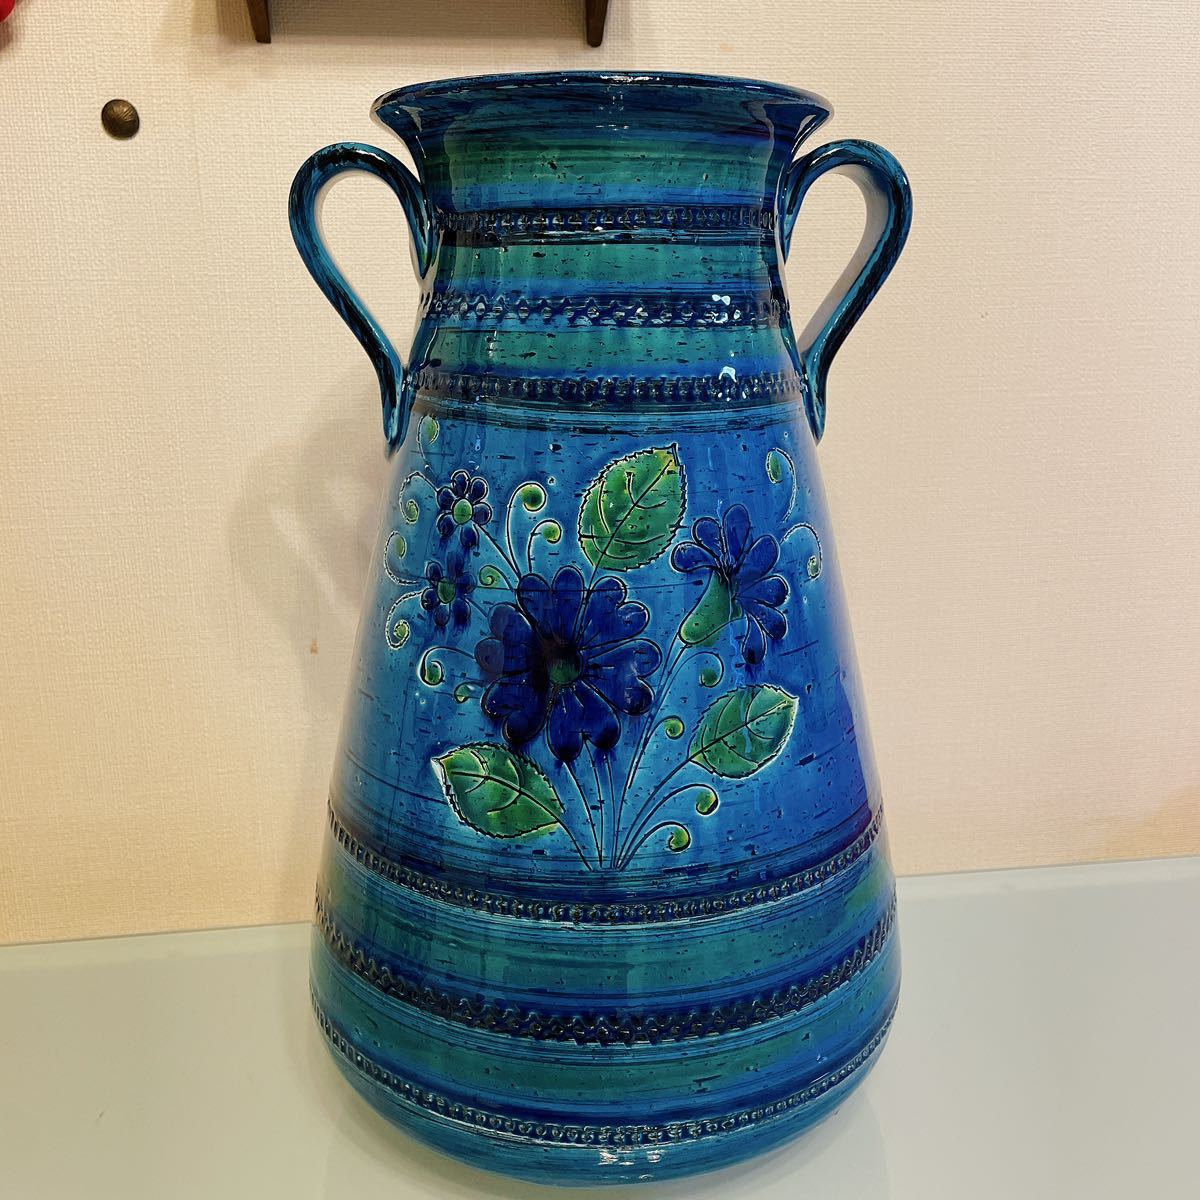 イタリア製 輸入雑貨 花瓶 ブルー グリーン 陶器 Bitossi ビトッシ Flavia フラビア フラワーベース リミニブルー ビンテージ インテリア